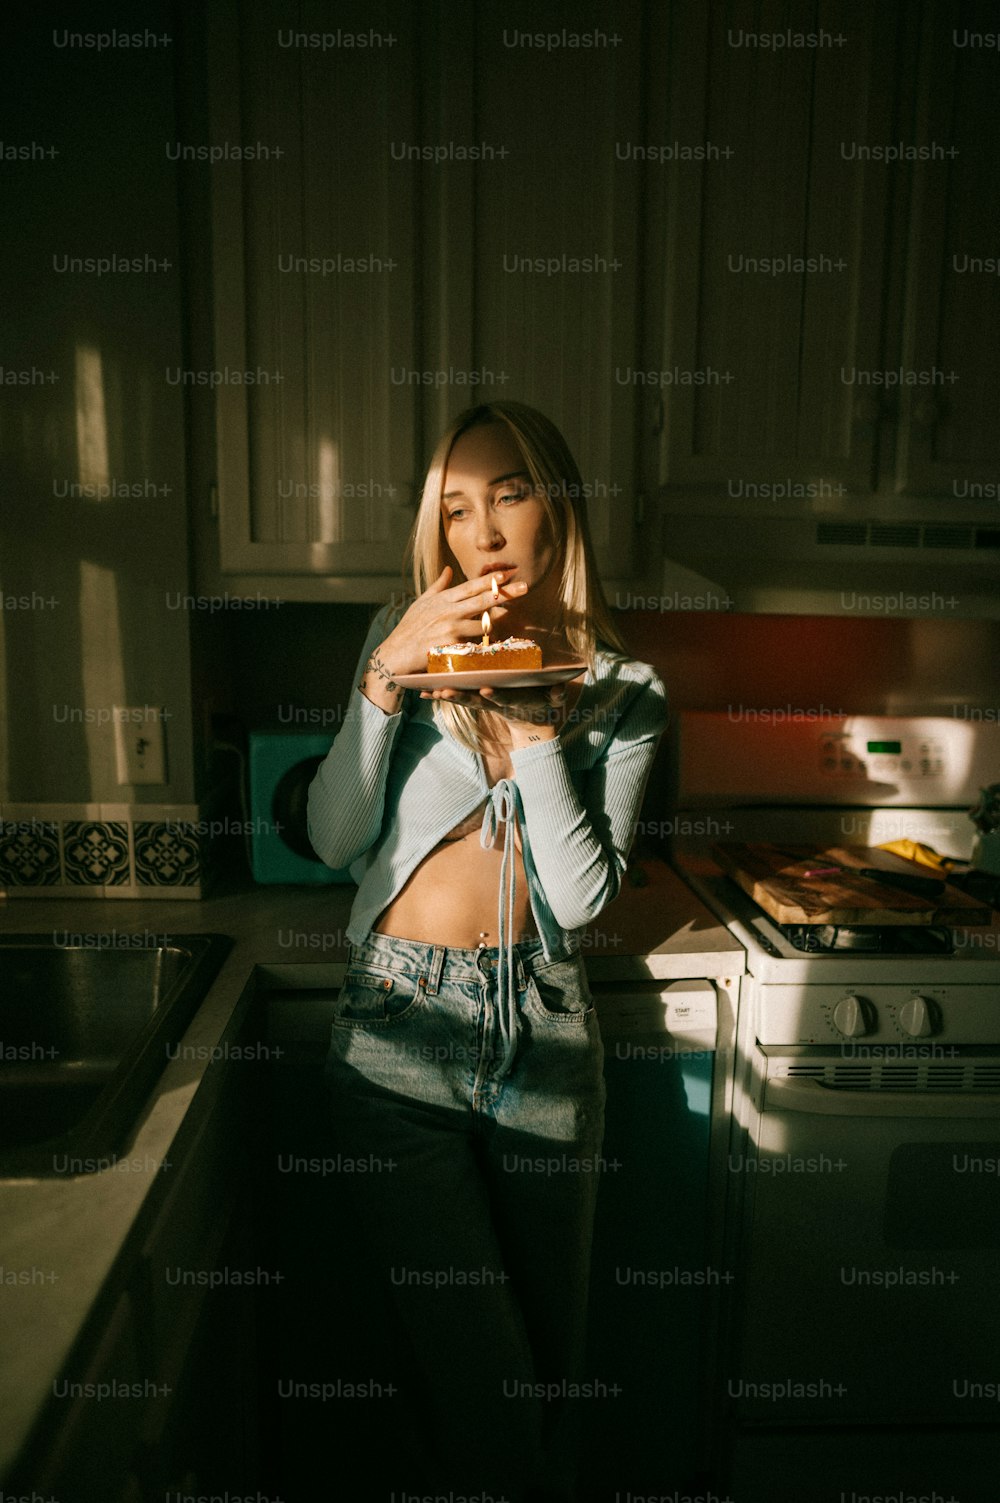 Une femme debout dans une cuisine tenant une pizza